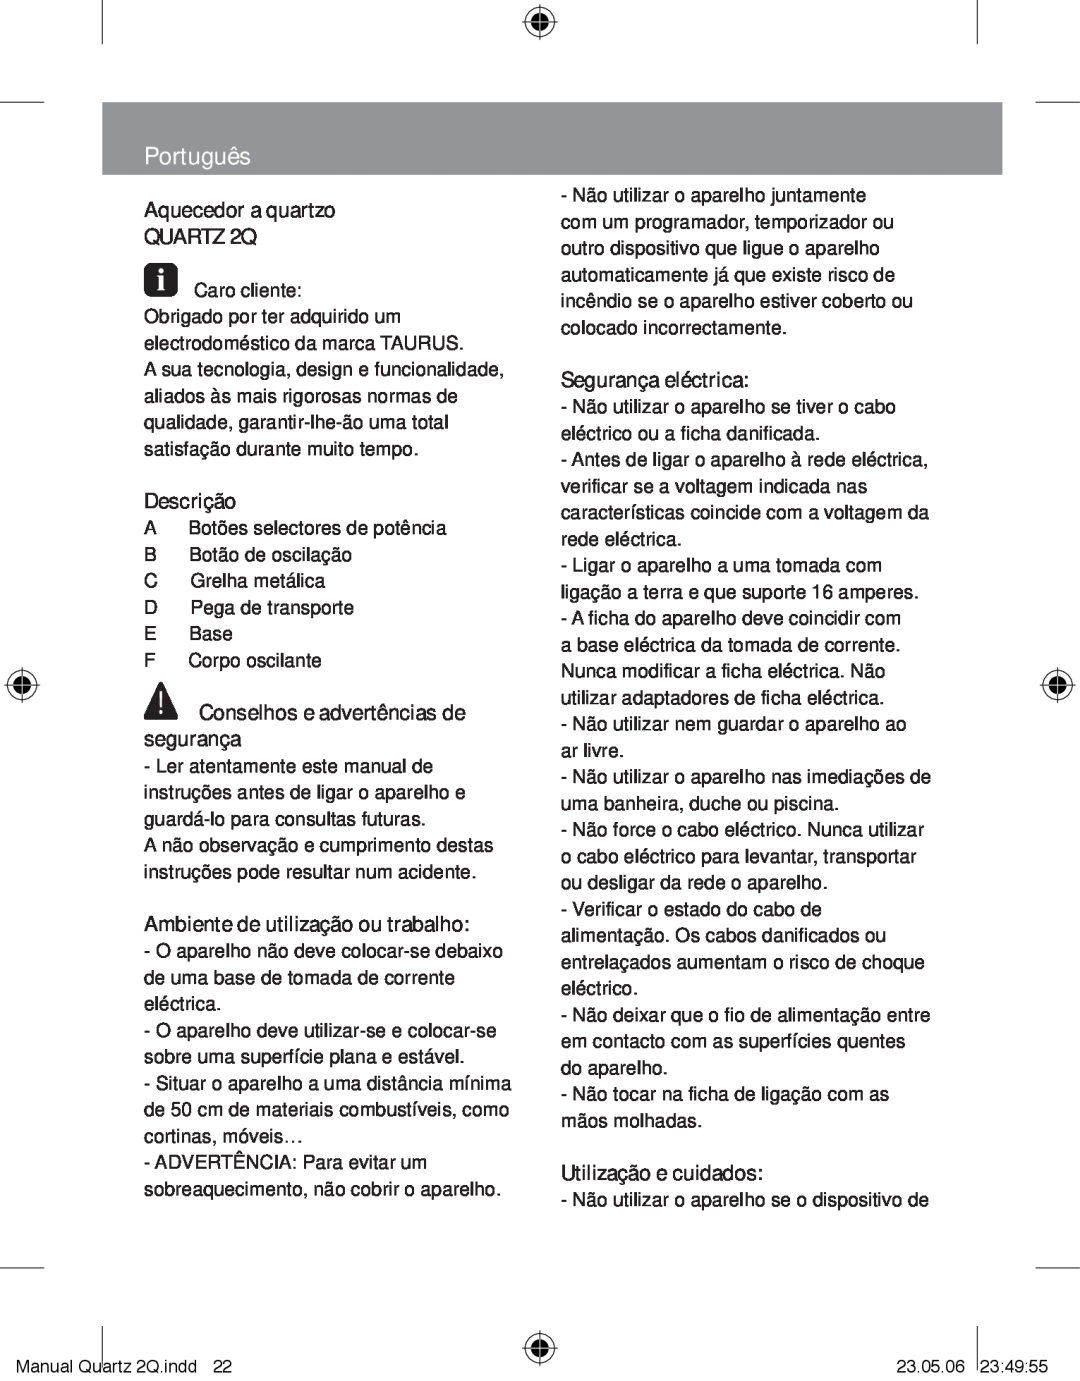 Taurus Group QUARTZ2Q manual Português, Aquecedor a quartzo QUARTZ 2Q, Descrição, Conselhos e advertências de segurança 